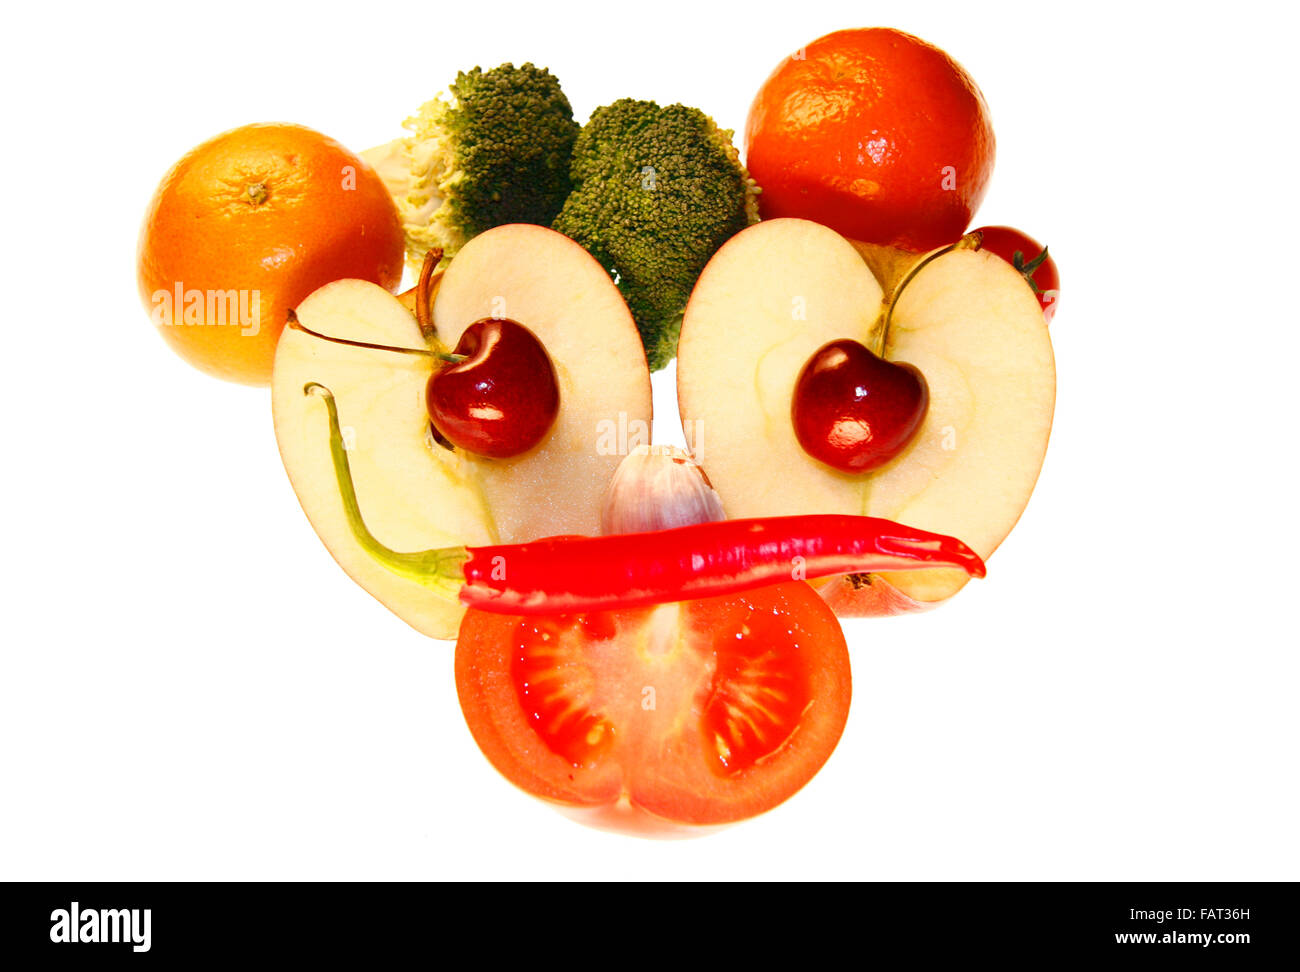 On / Gesicht: Brokkoli, Clementinen, Knoblauch, Kirschen, Apfel, Tomate, Chilly - Symbolbild Nahrungsmittel. Stockfoto